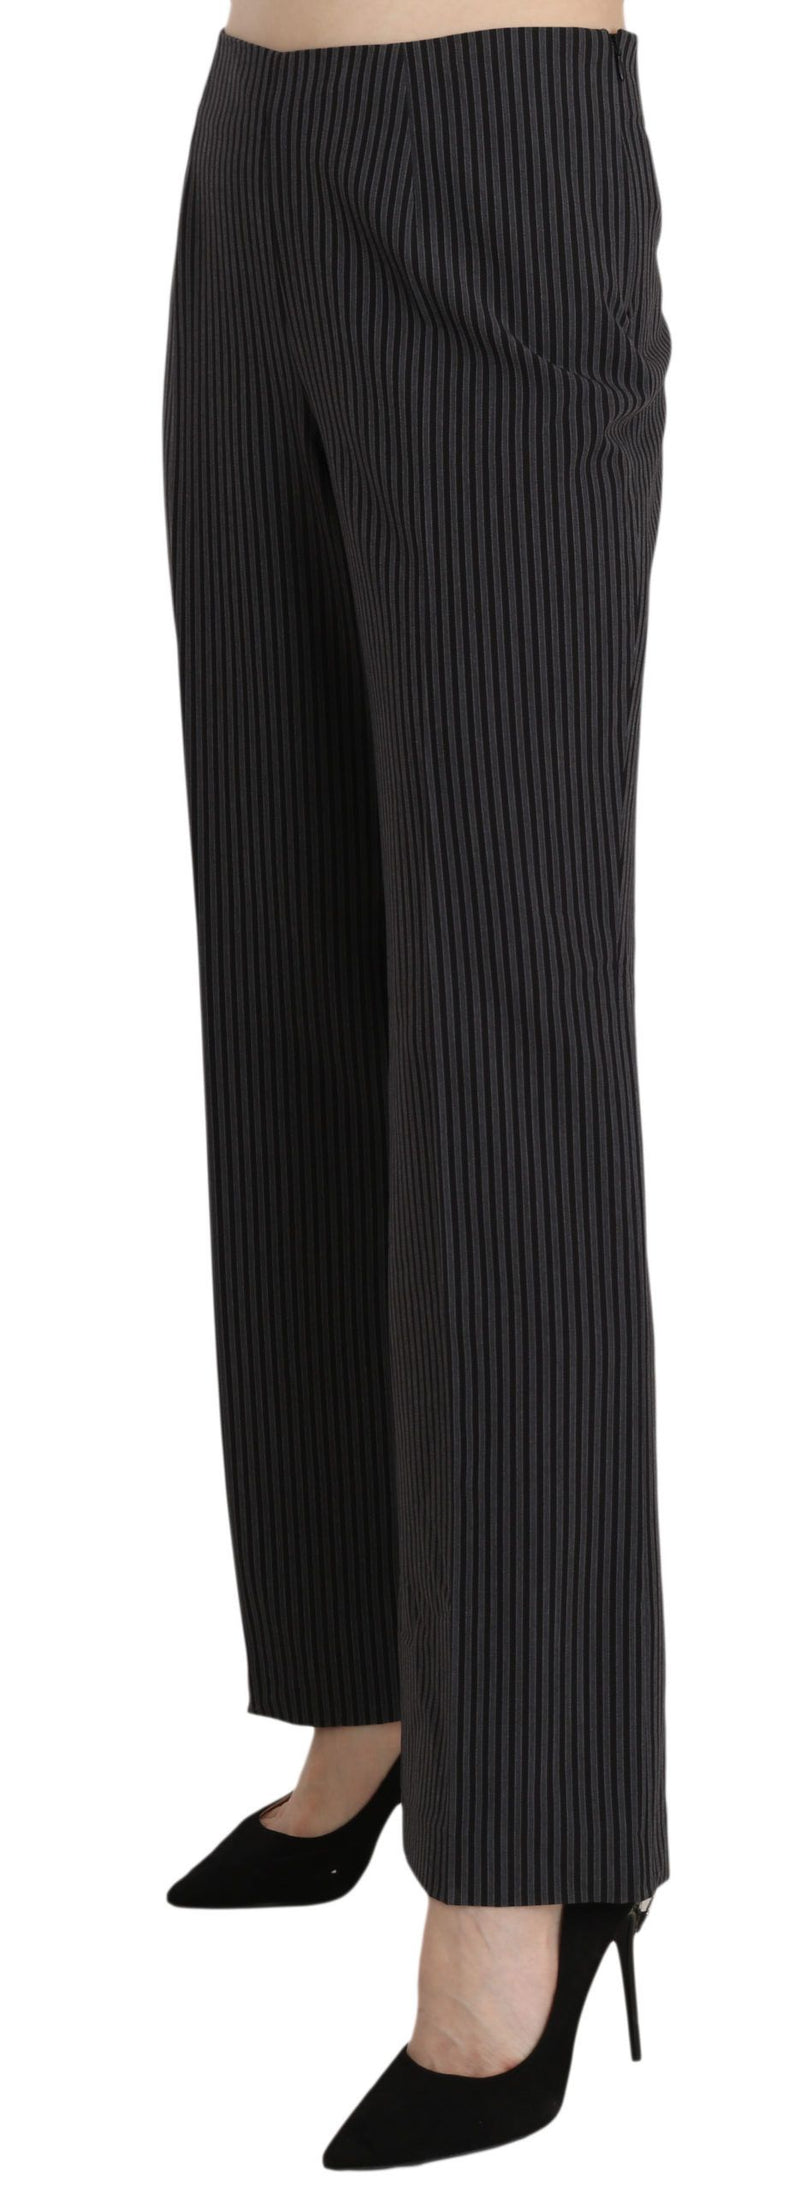 BENCIVENGA Elegant Striped Straight Fit Women's Pants